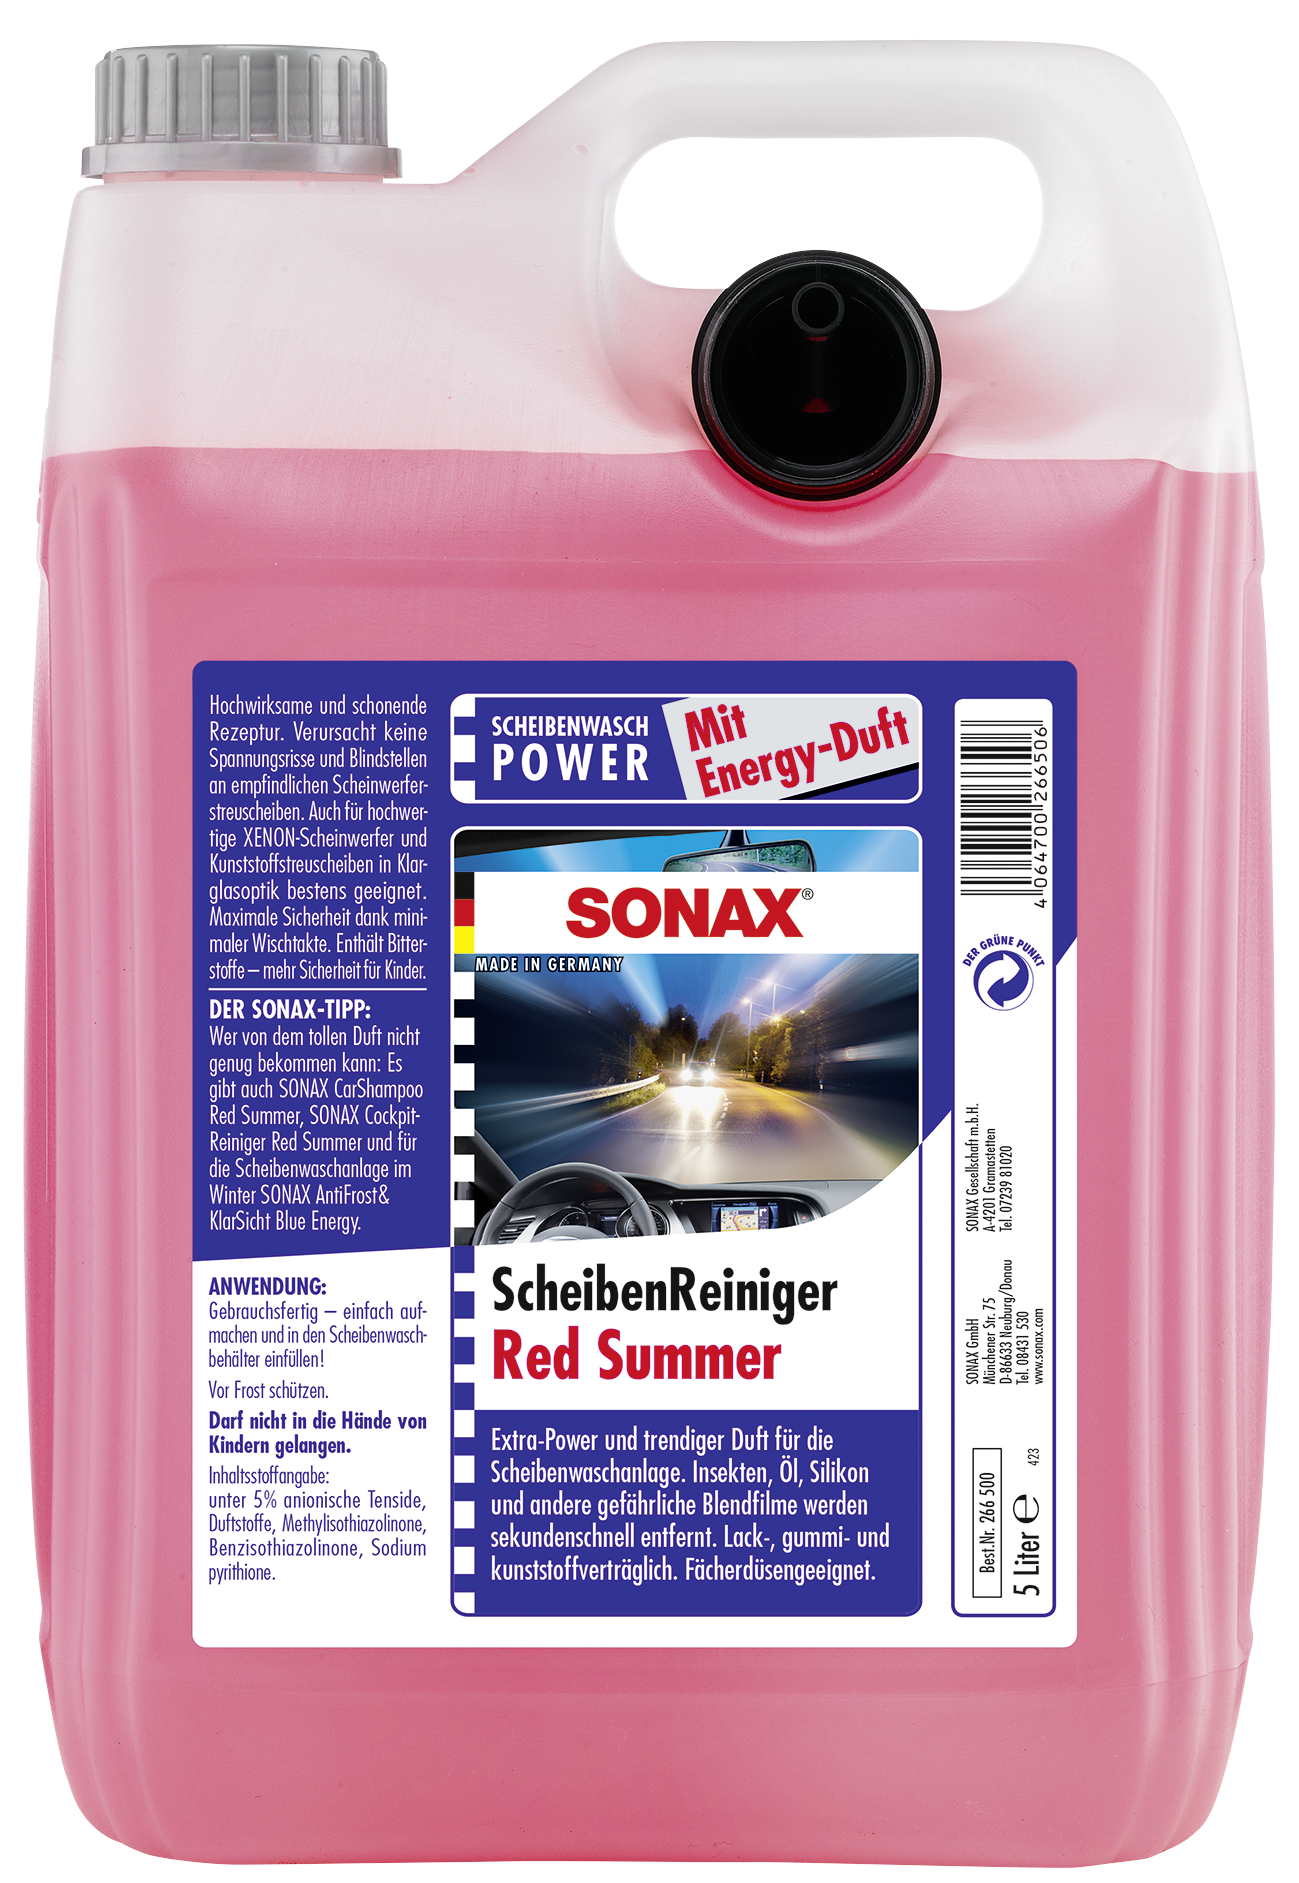 SONAX ScheibenReiniger 